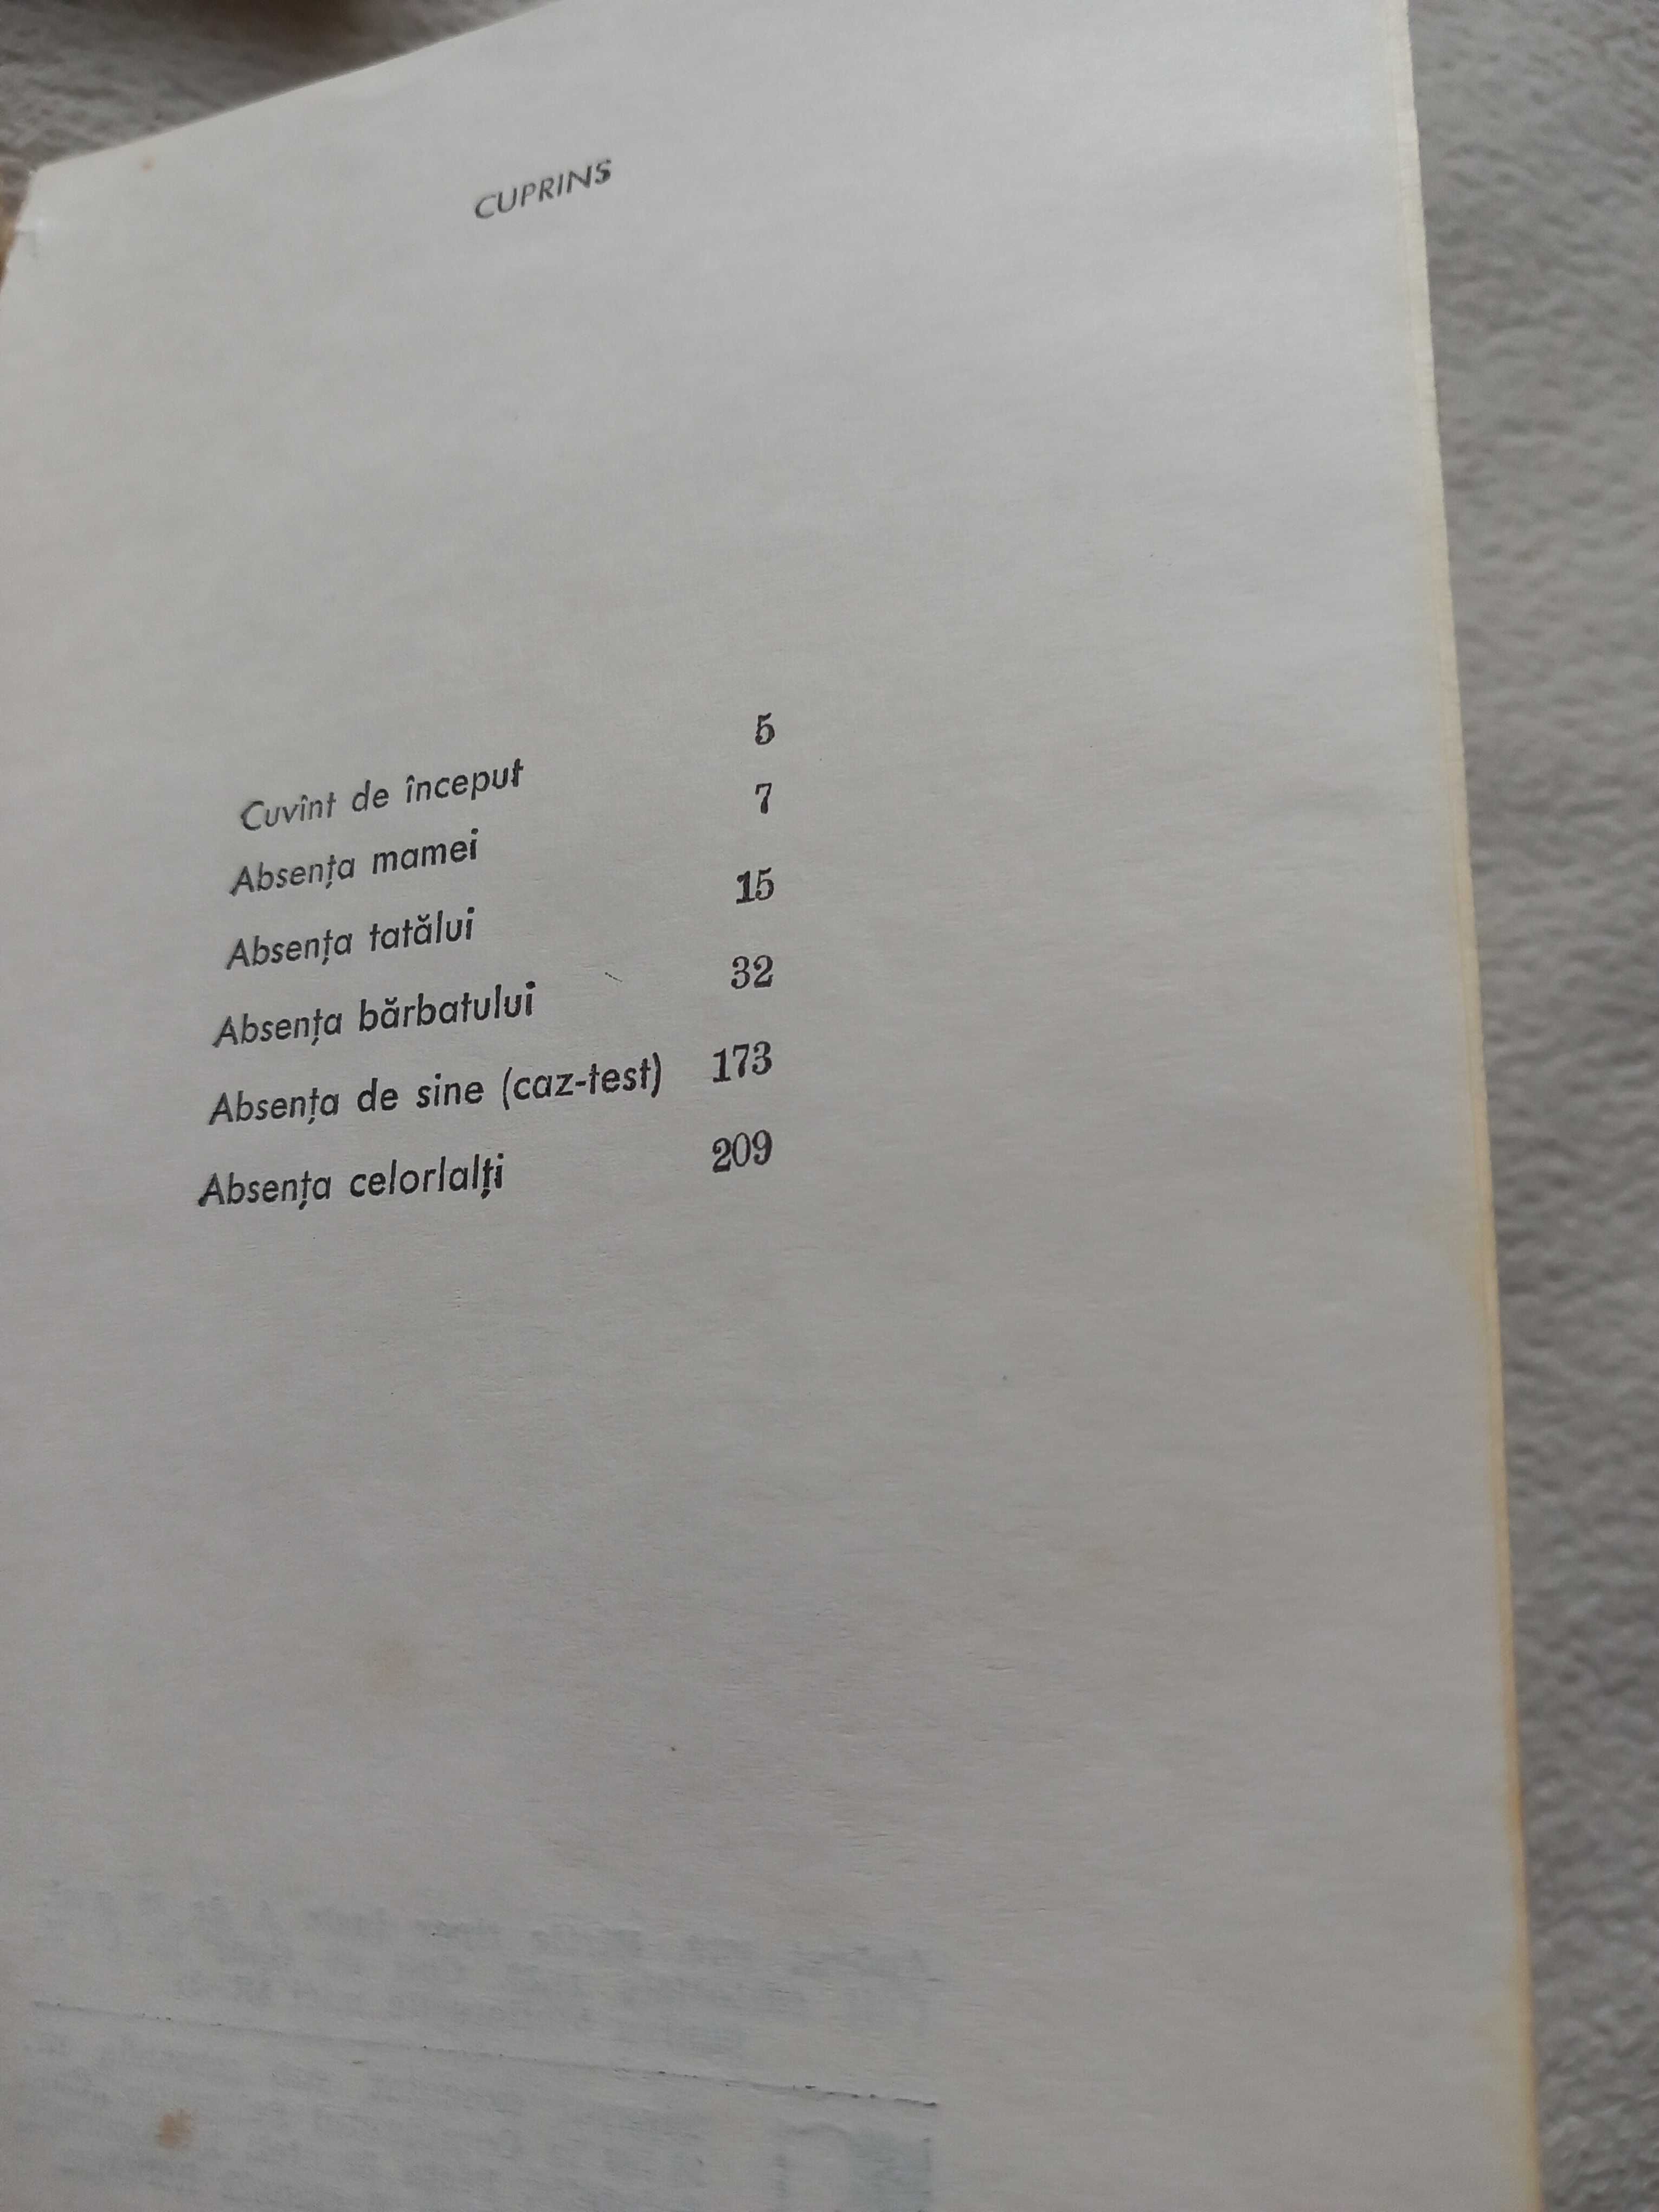 Cartea"Romane trăite" de Mihai Stoian,Editura Cartea Romaneasca 1972